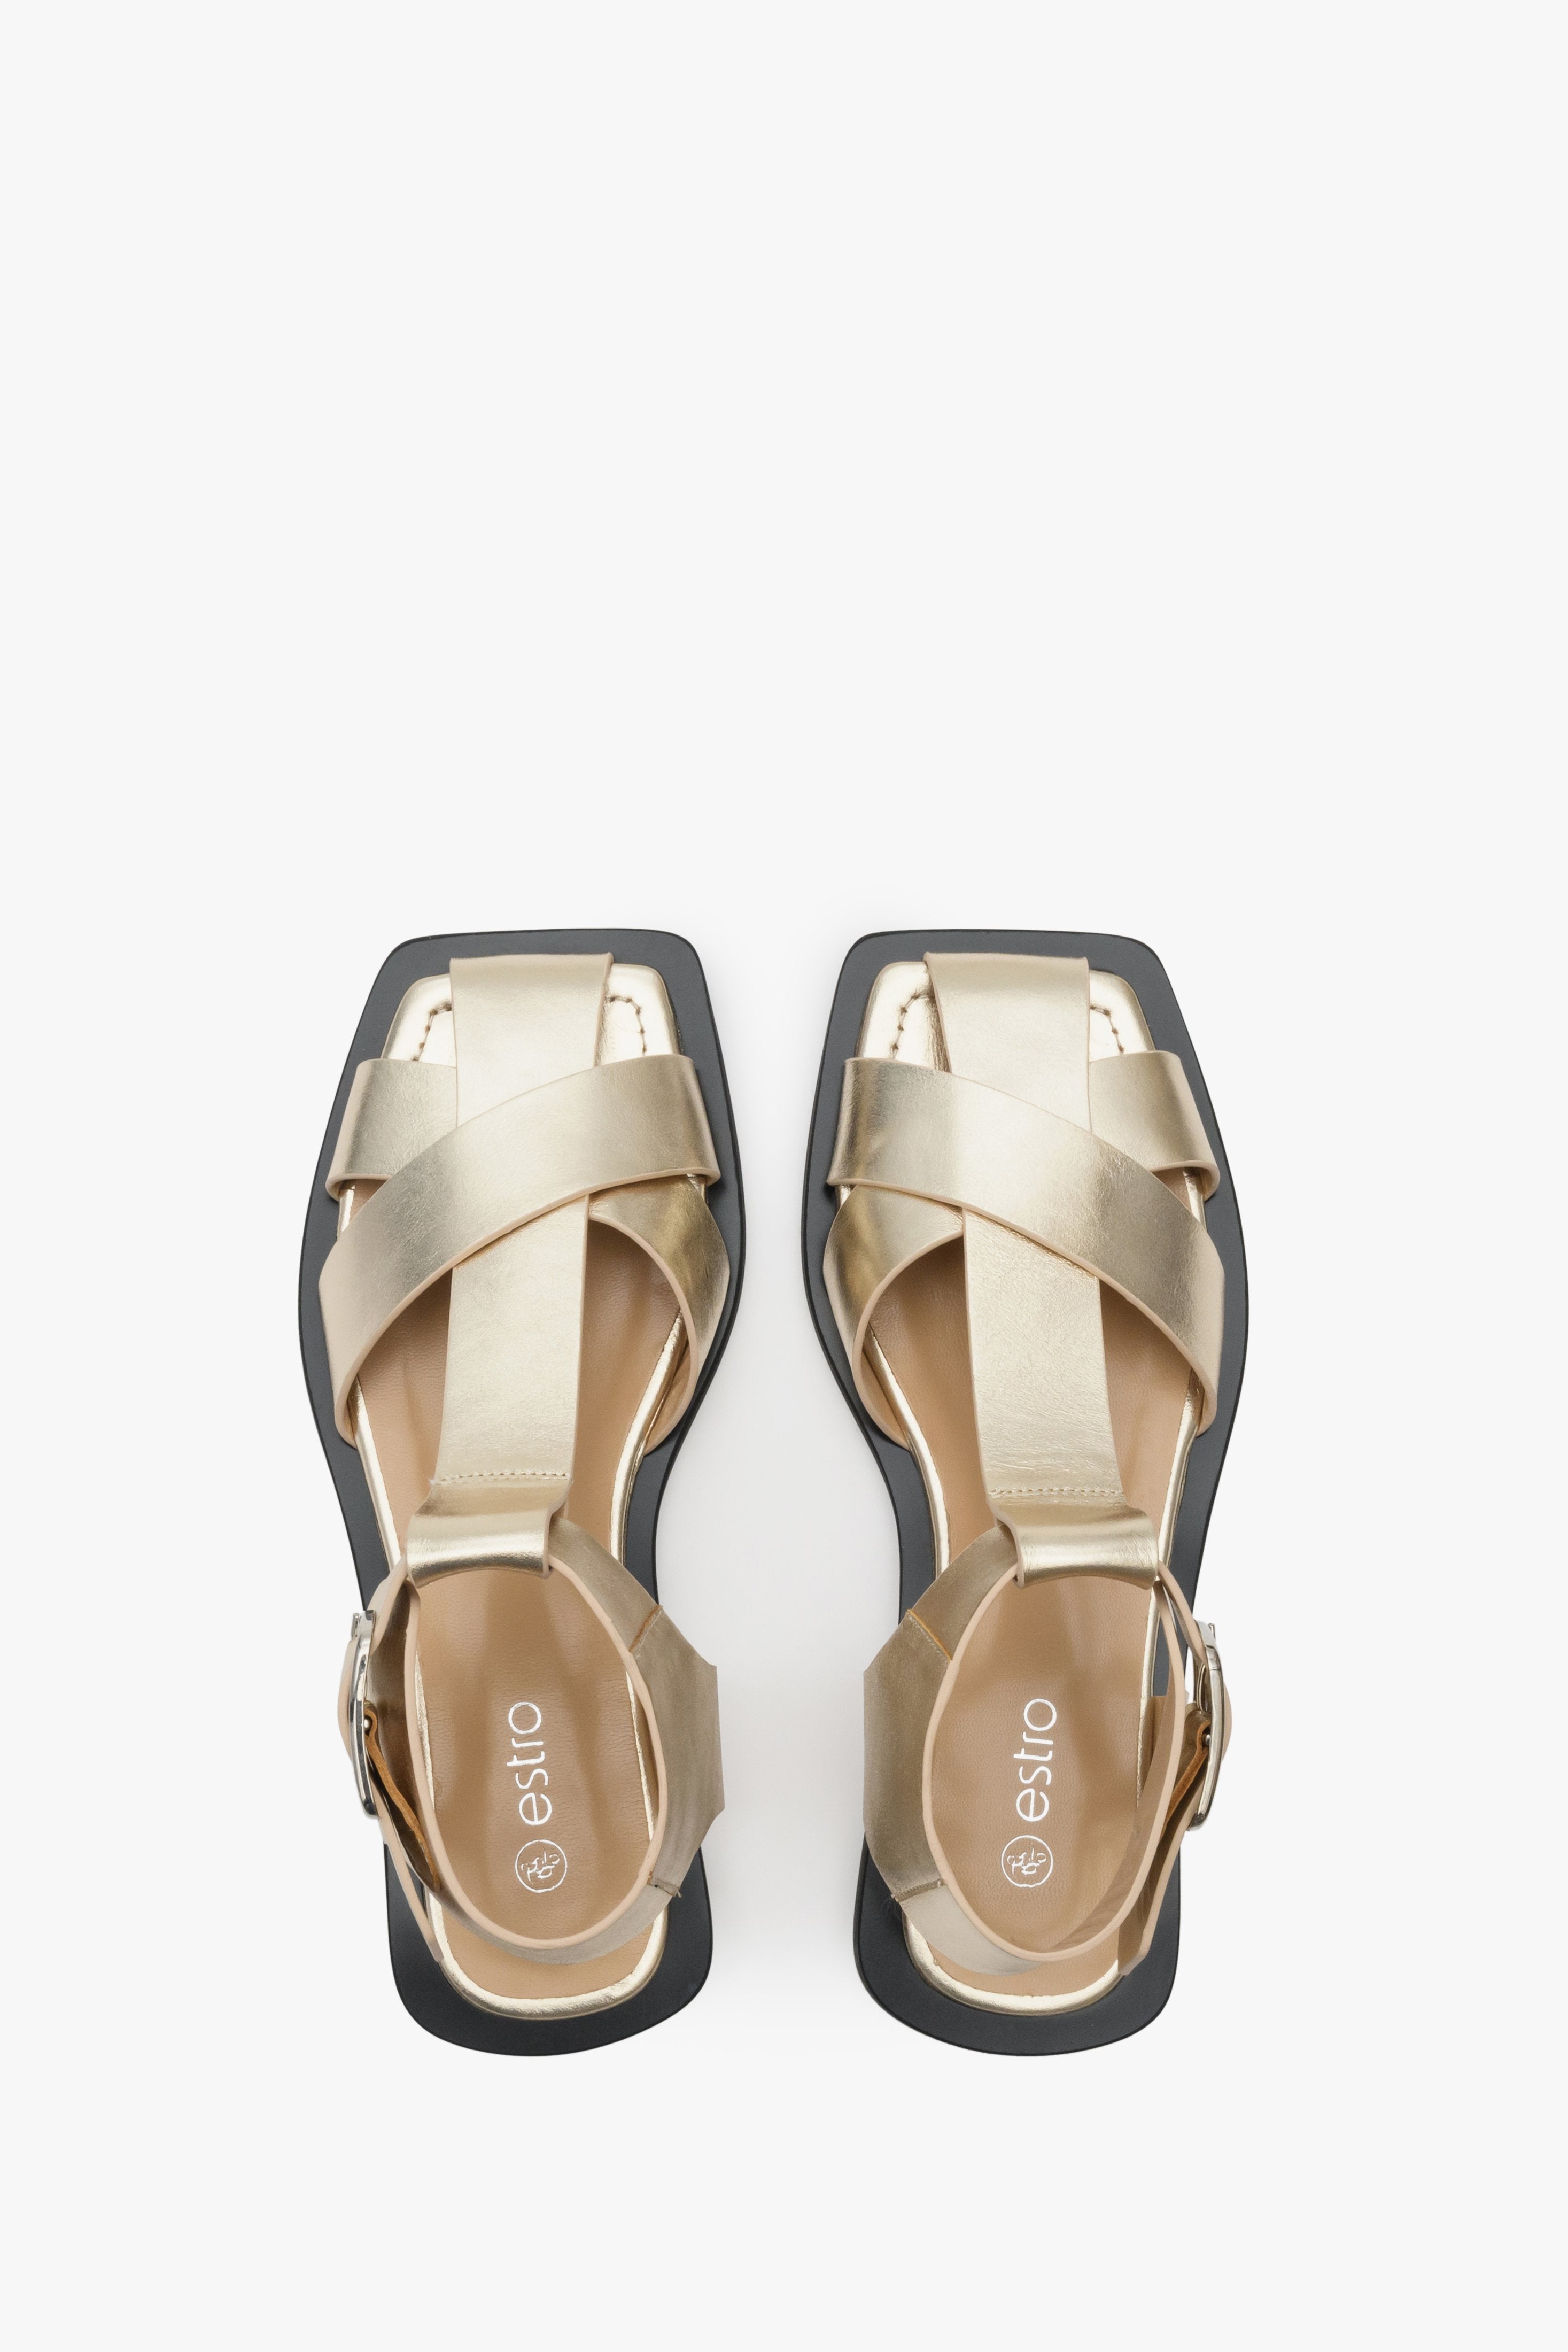 Sandały damskie złote skórzane na lato Estro - prezentacja obuwia z góry.